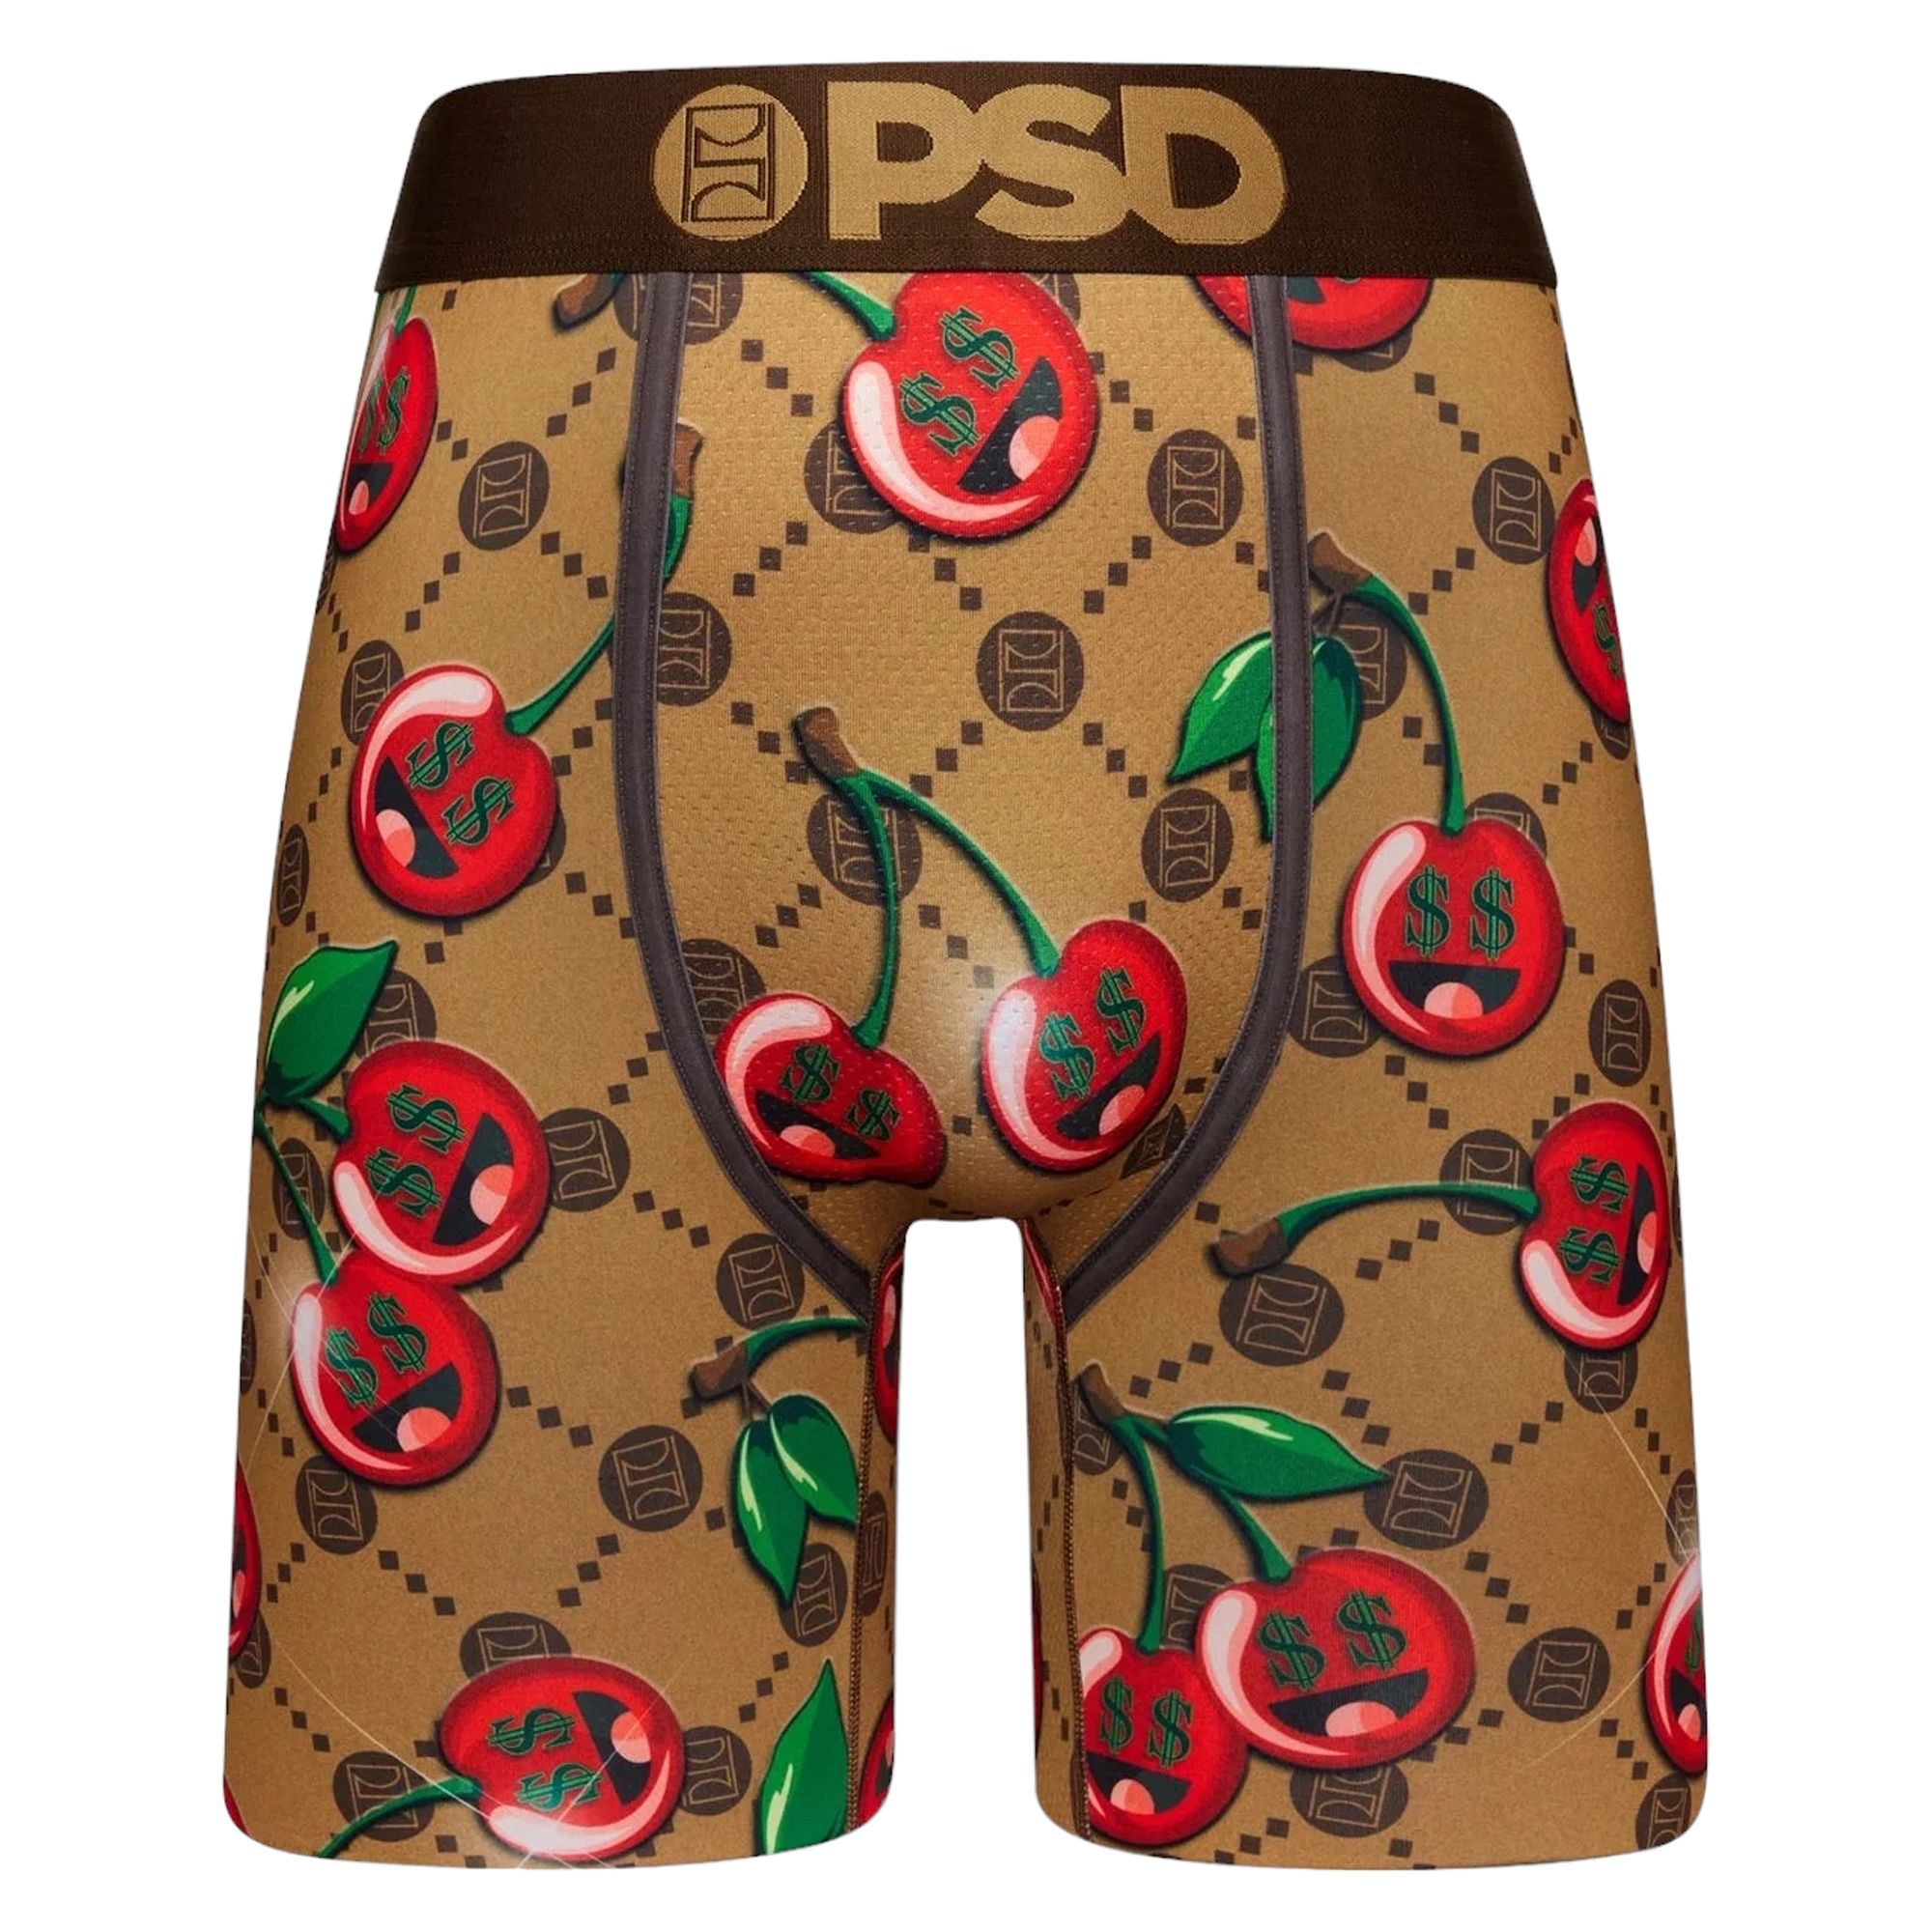 PSD Underwear : r/BriarMakenzie